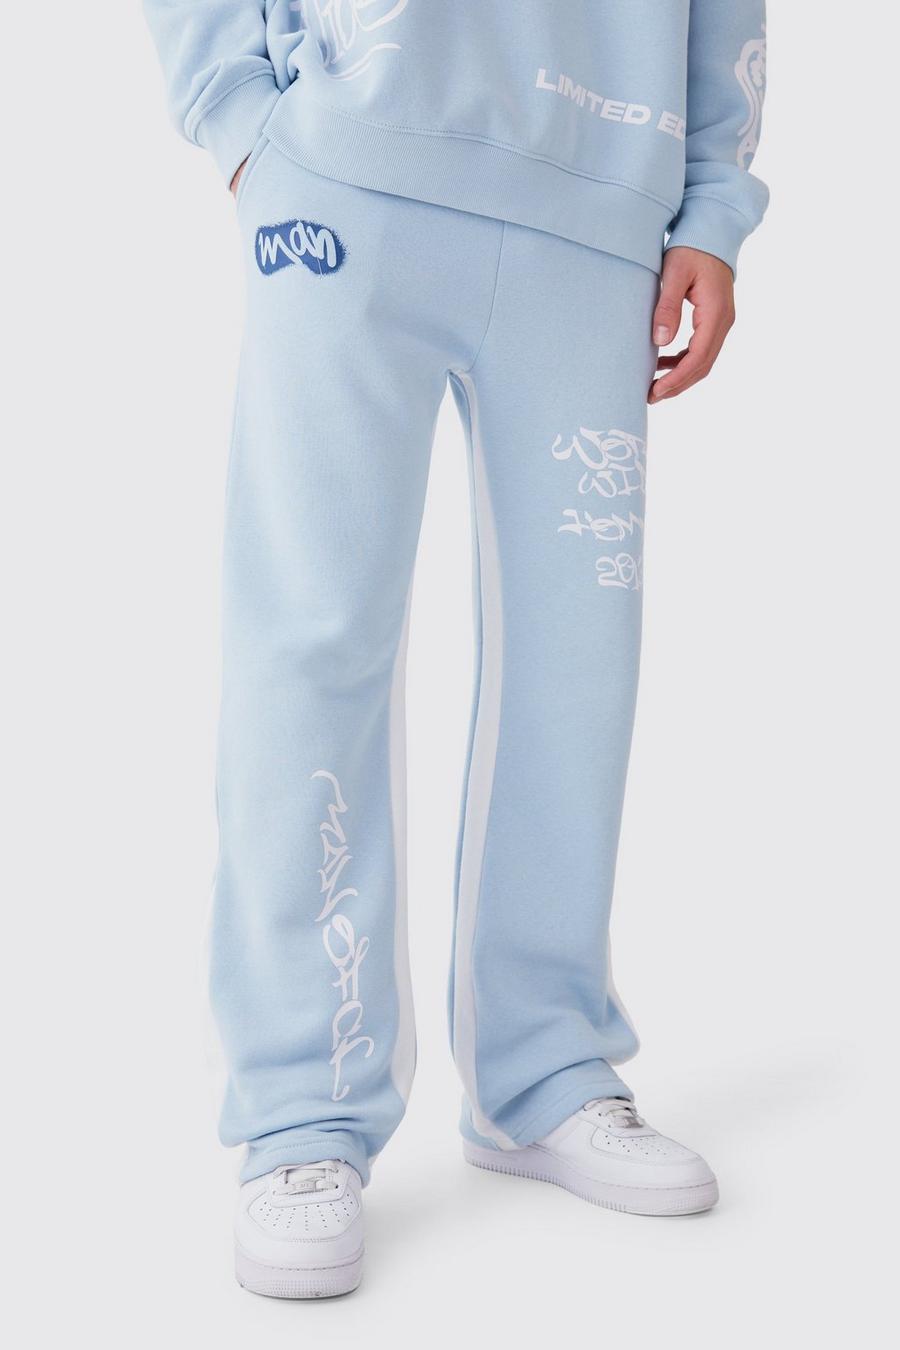 Pantaloni tuta oversize stile Graffiti con inserti a contrasto, Light blue